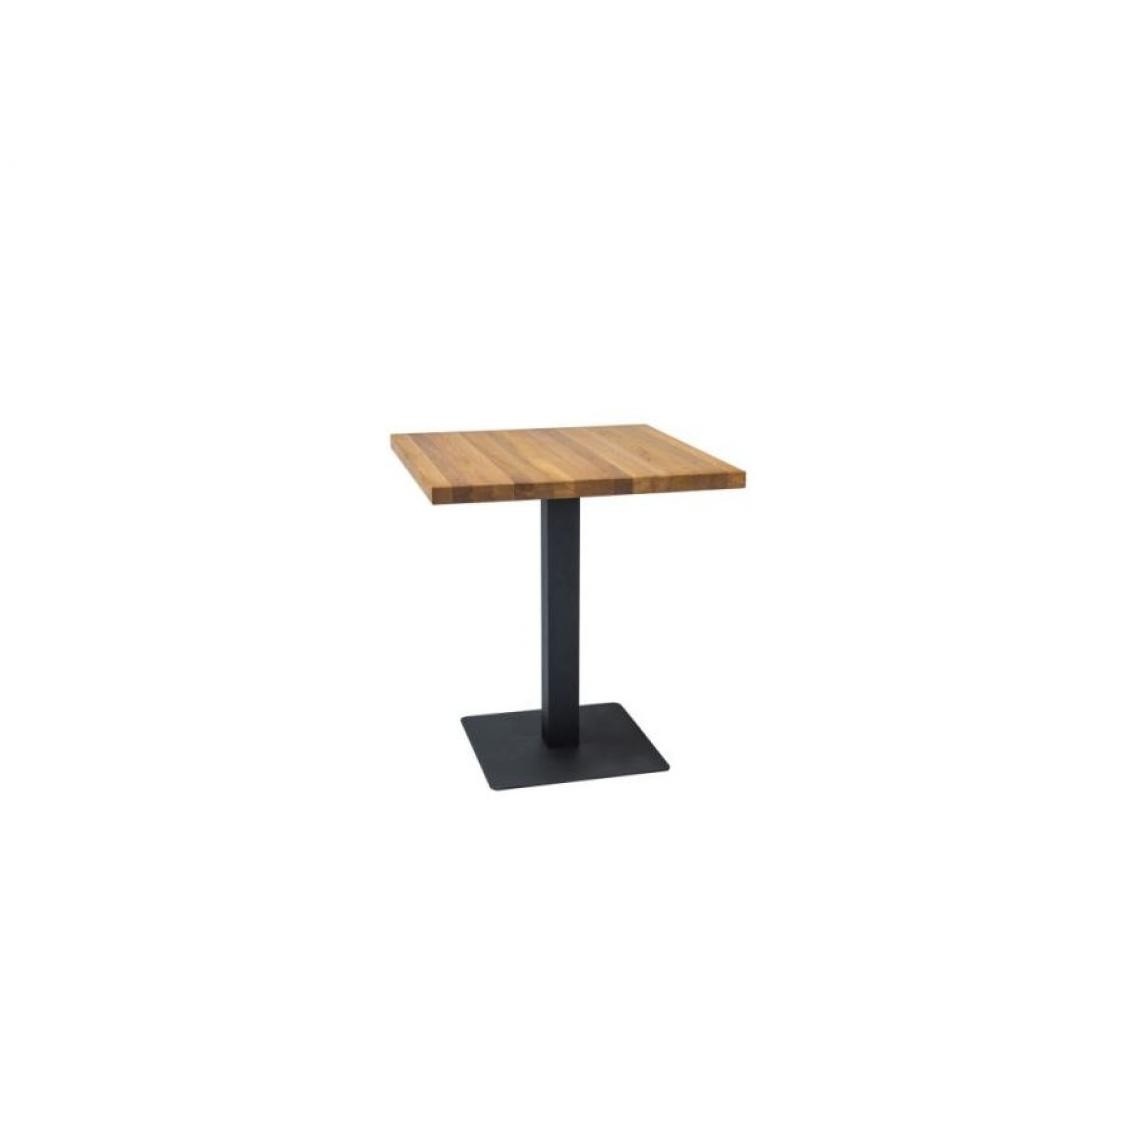 Hucoco - PUCO - Table de style loft avec un piètement en métal - 70x70x76 cm - Plateau carré en bois massif huilé - Table fixe - Chêne - Tables à manger